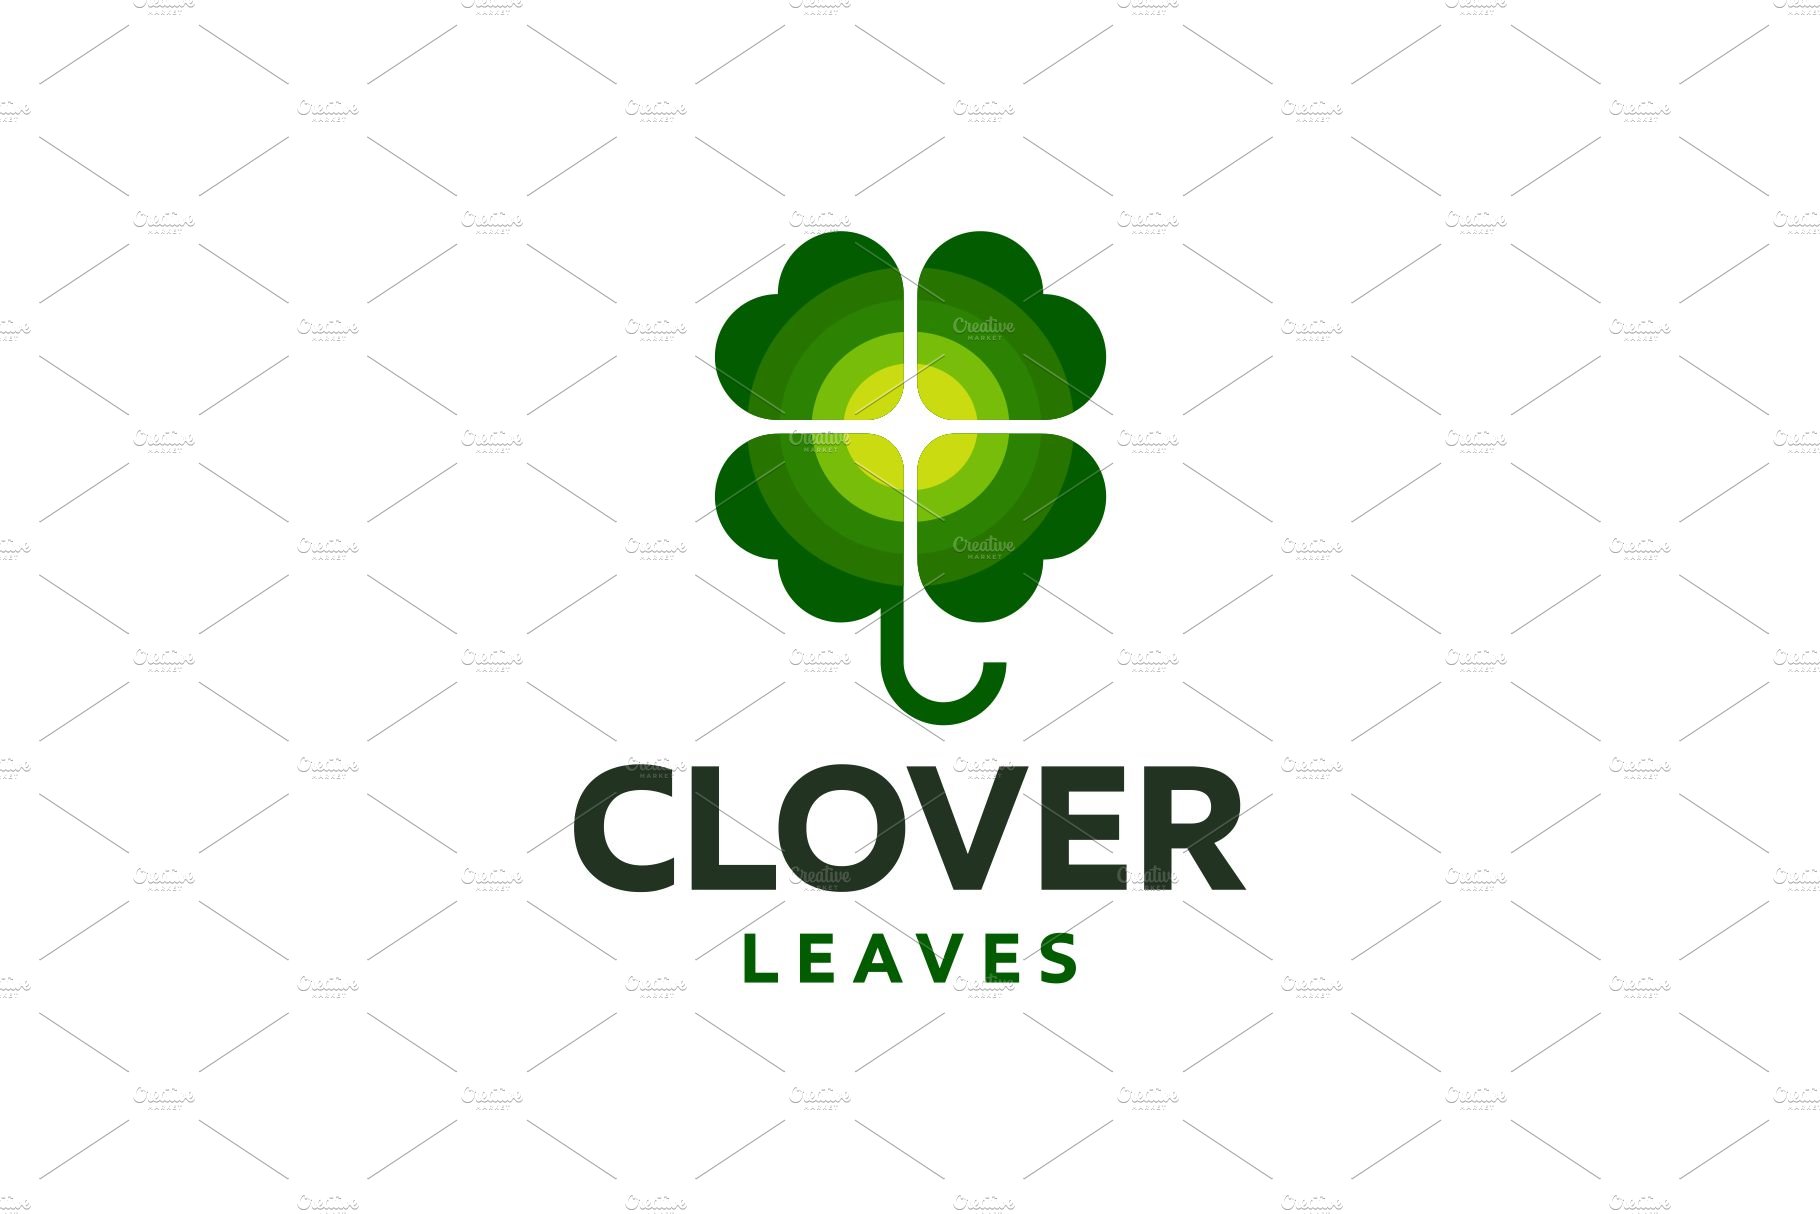 Clover Leaf Logo cover image.